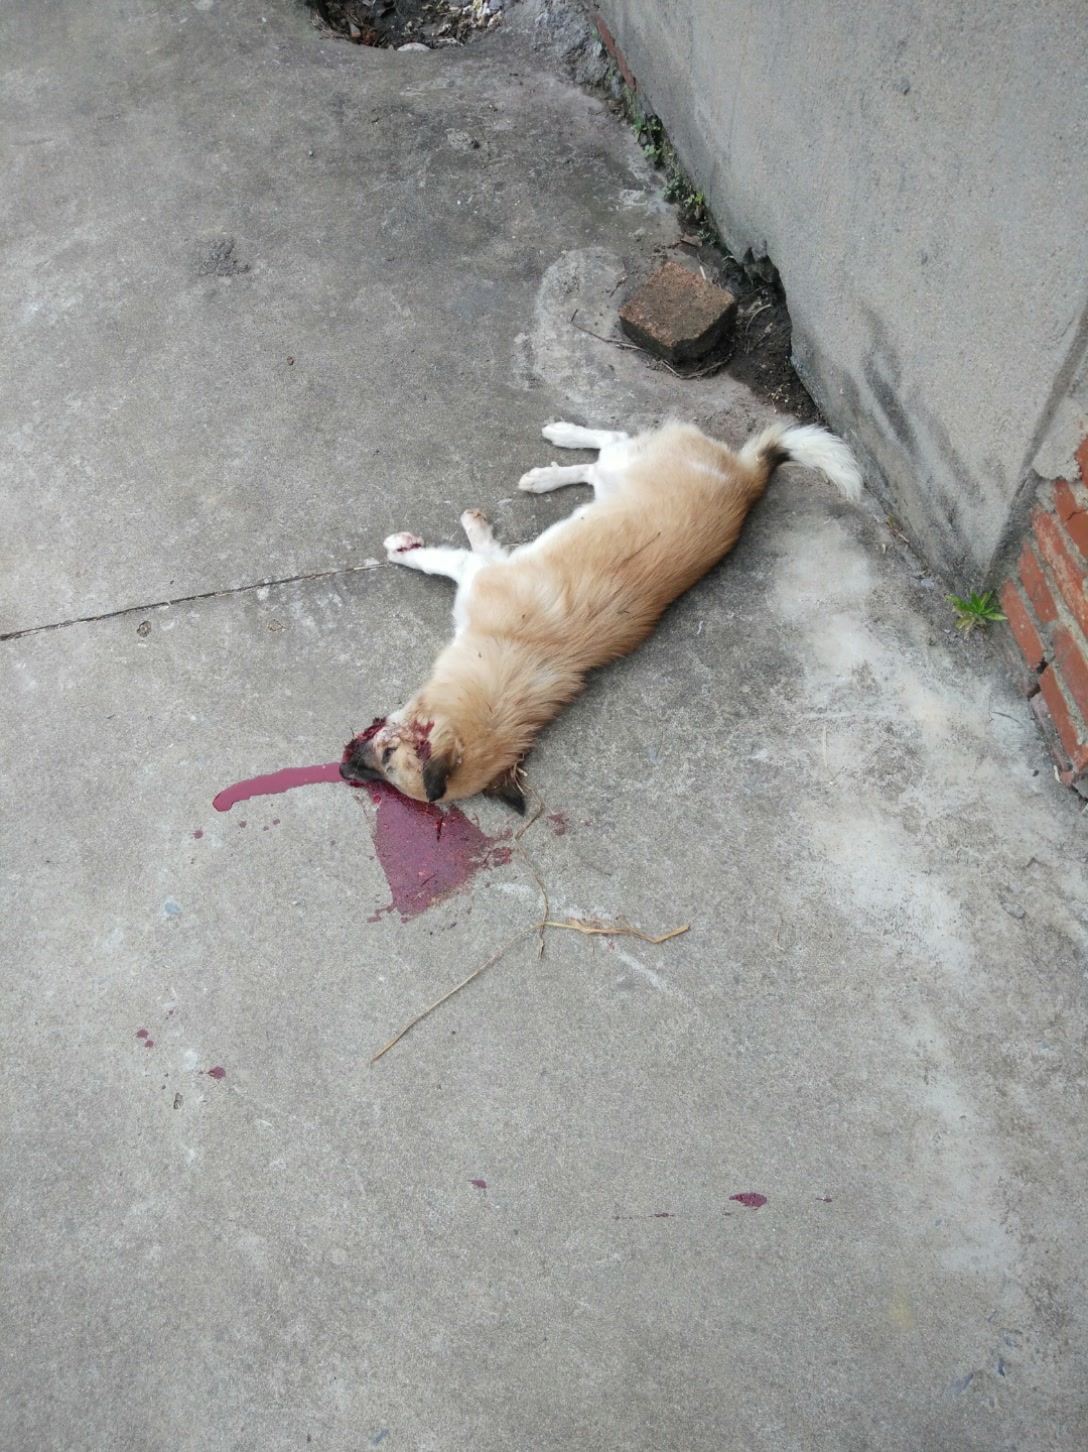 狗狗被打死图片